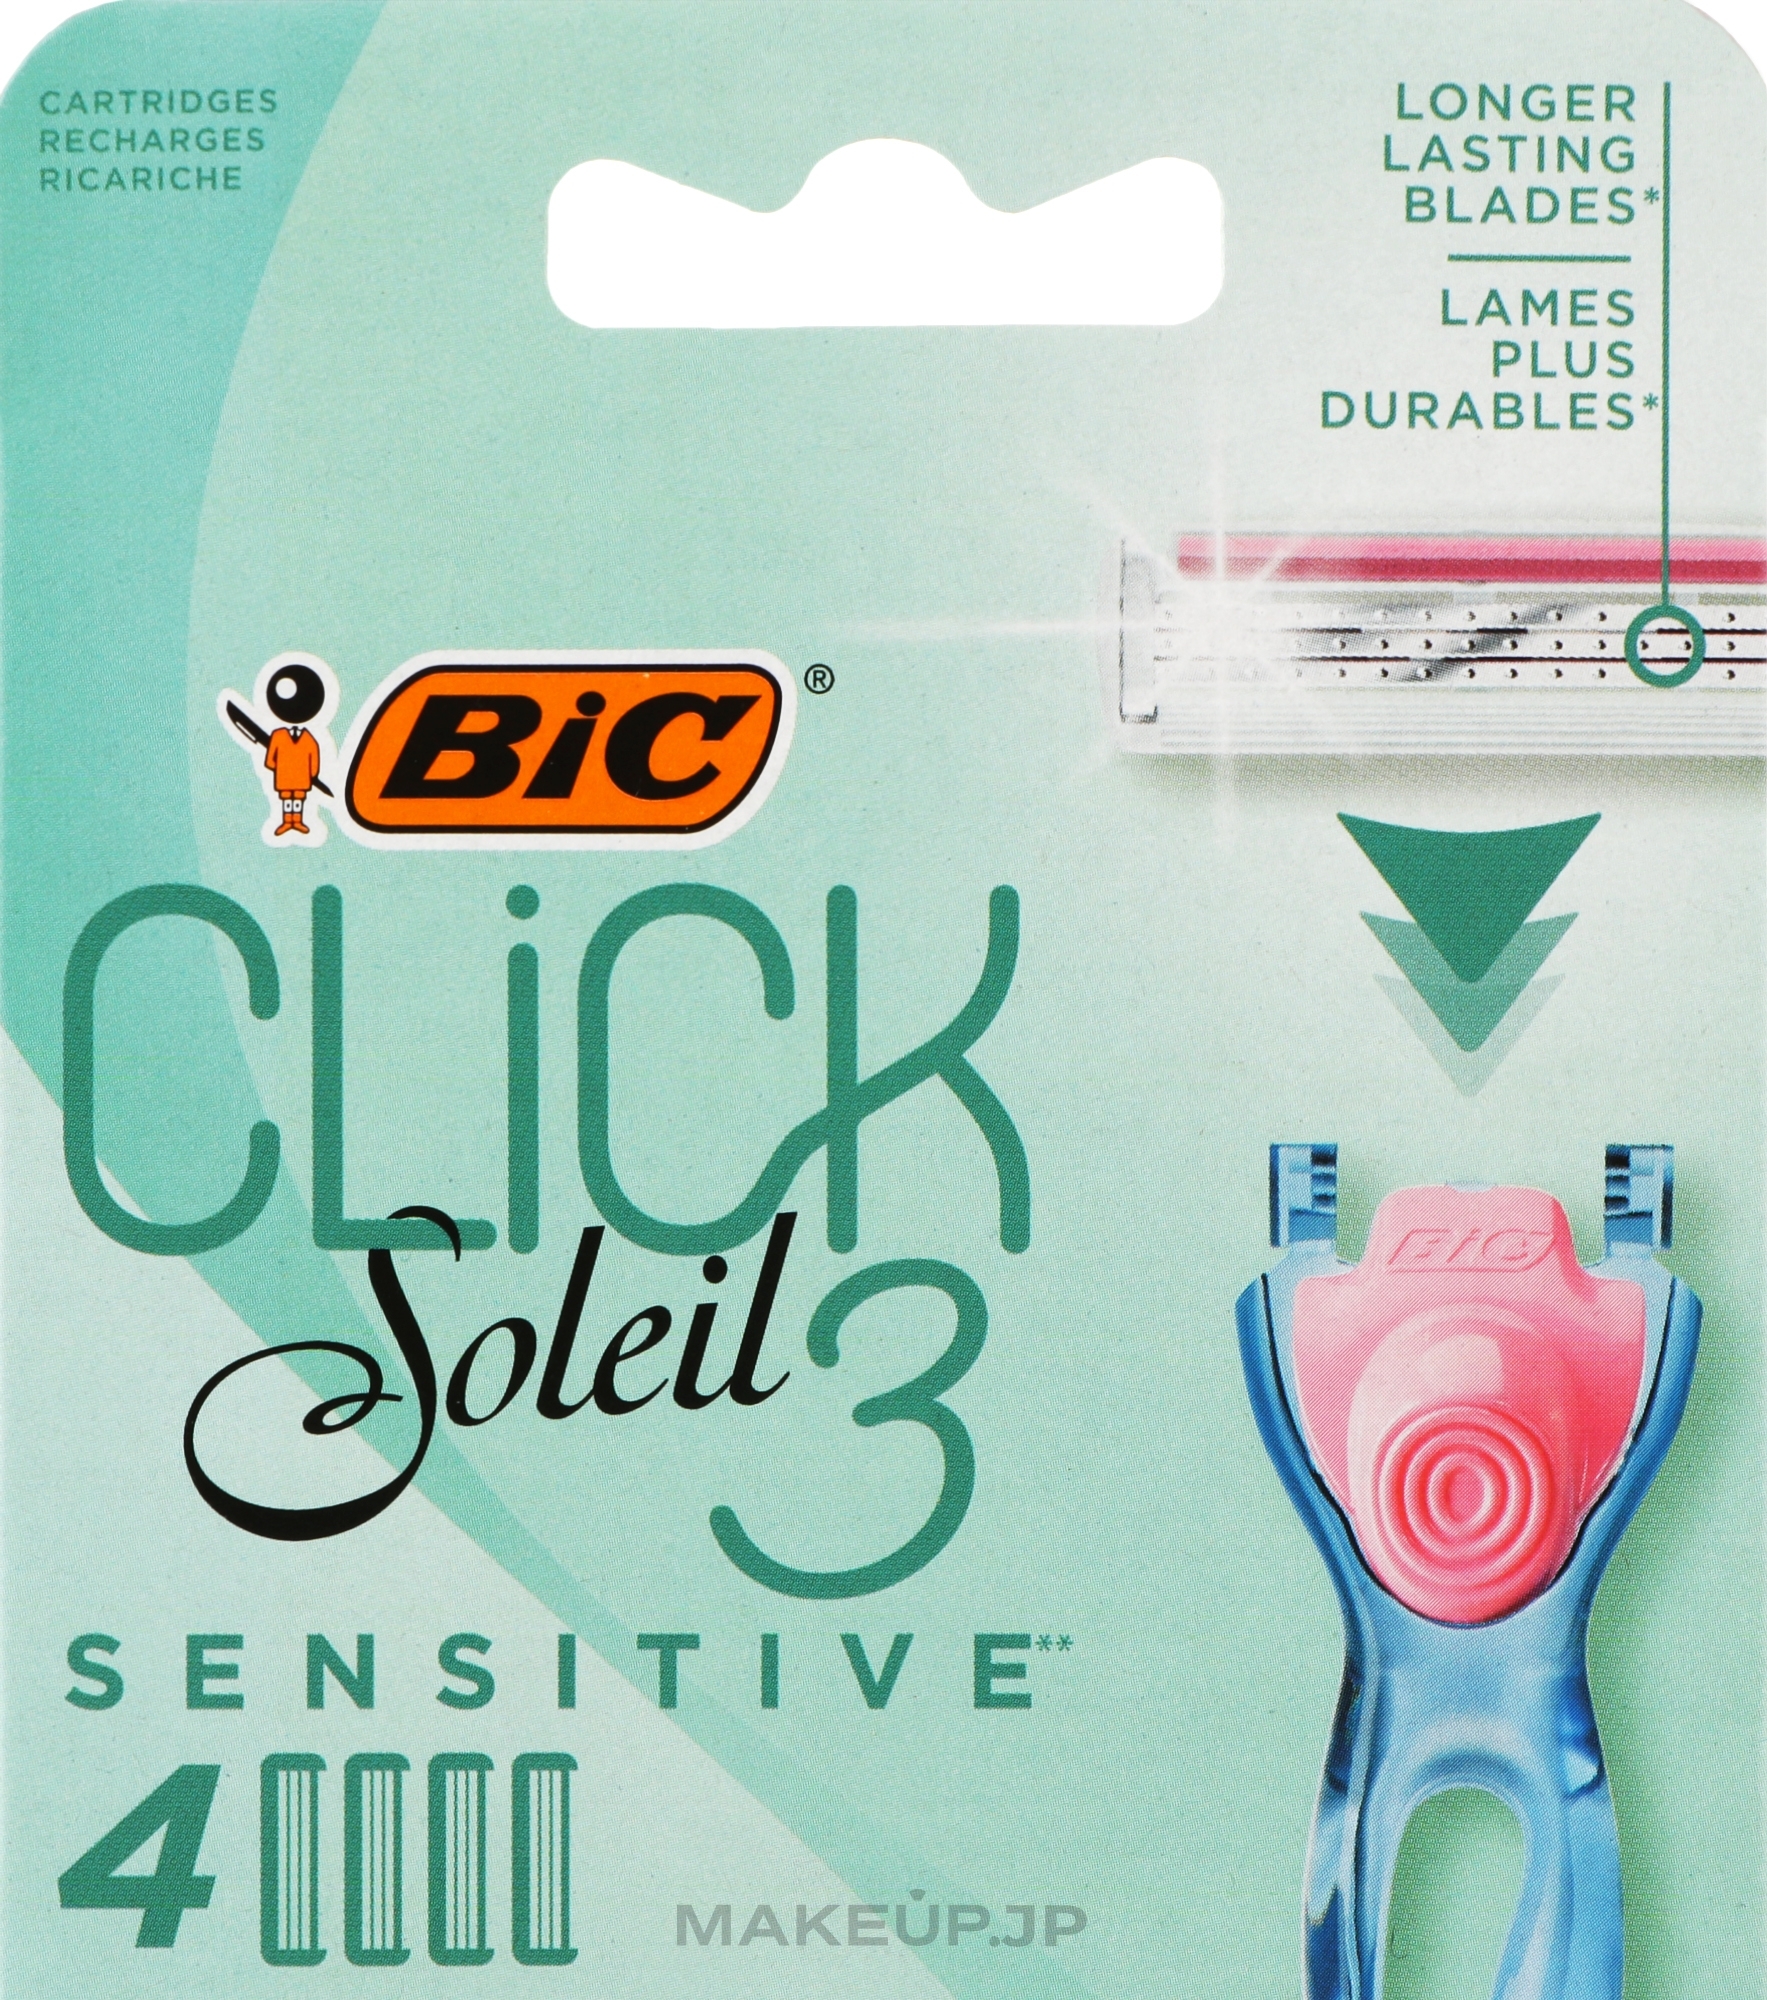 Replaceable Shaving Cassettes, 4 pcs - Bic Click 3 Soleil Sensitive — photo 4 szt.